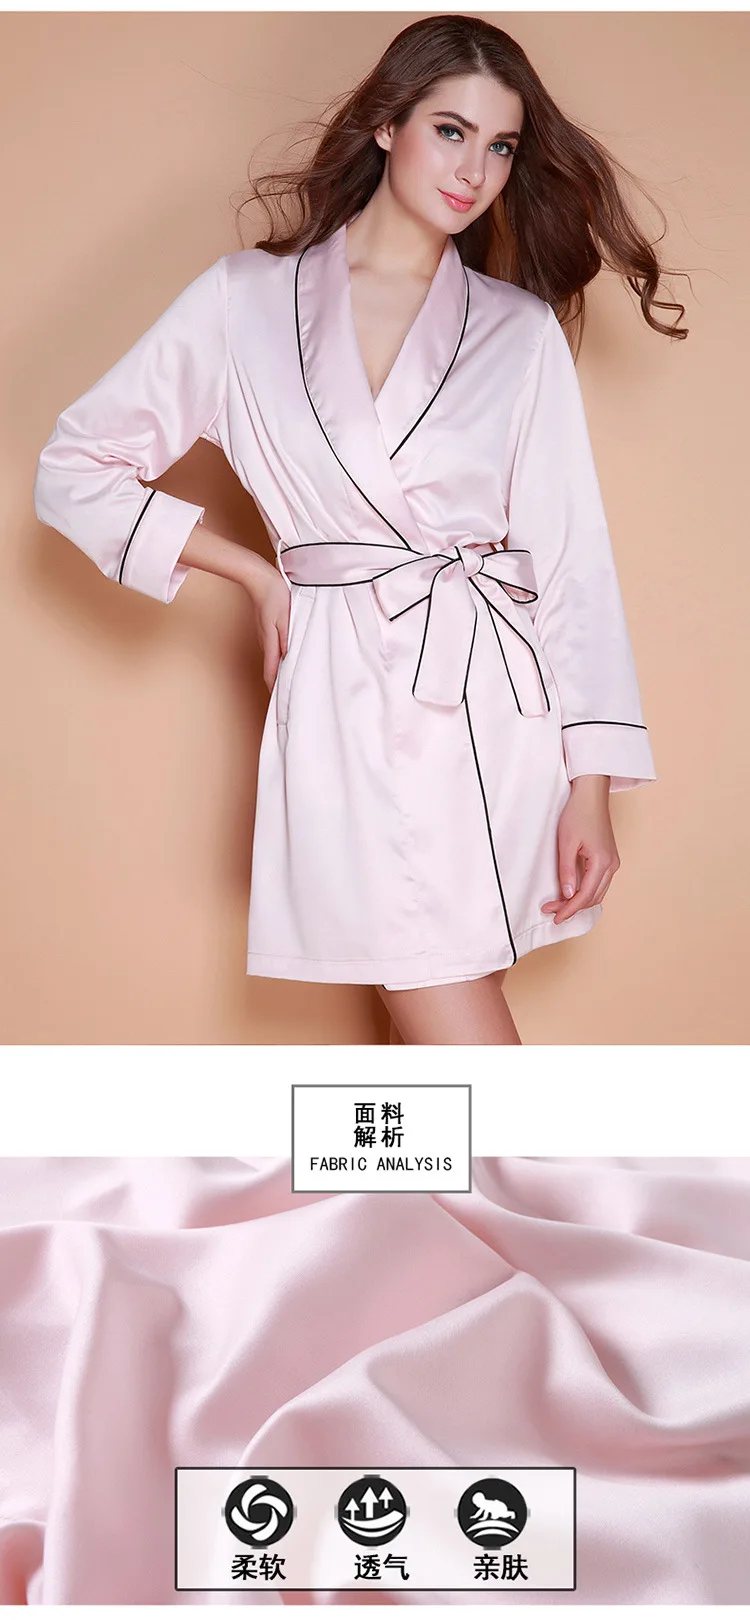 Fdfklak пикантные розовые роковой сезон: весна–лето невесты халаты халат шелковые халаты для Для женщин сна Одежда Q956